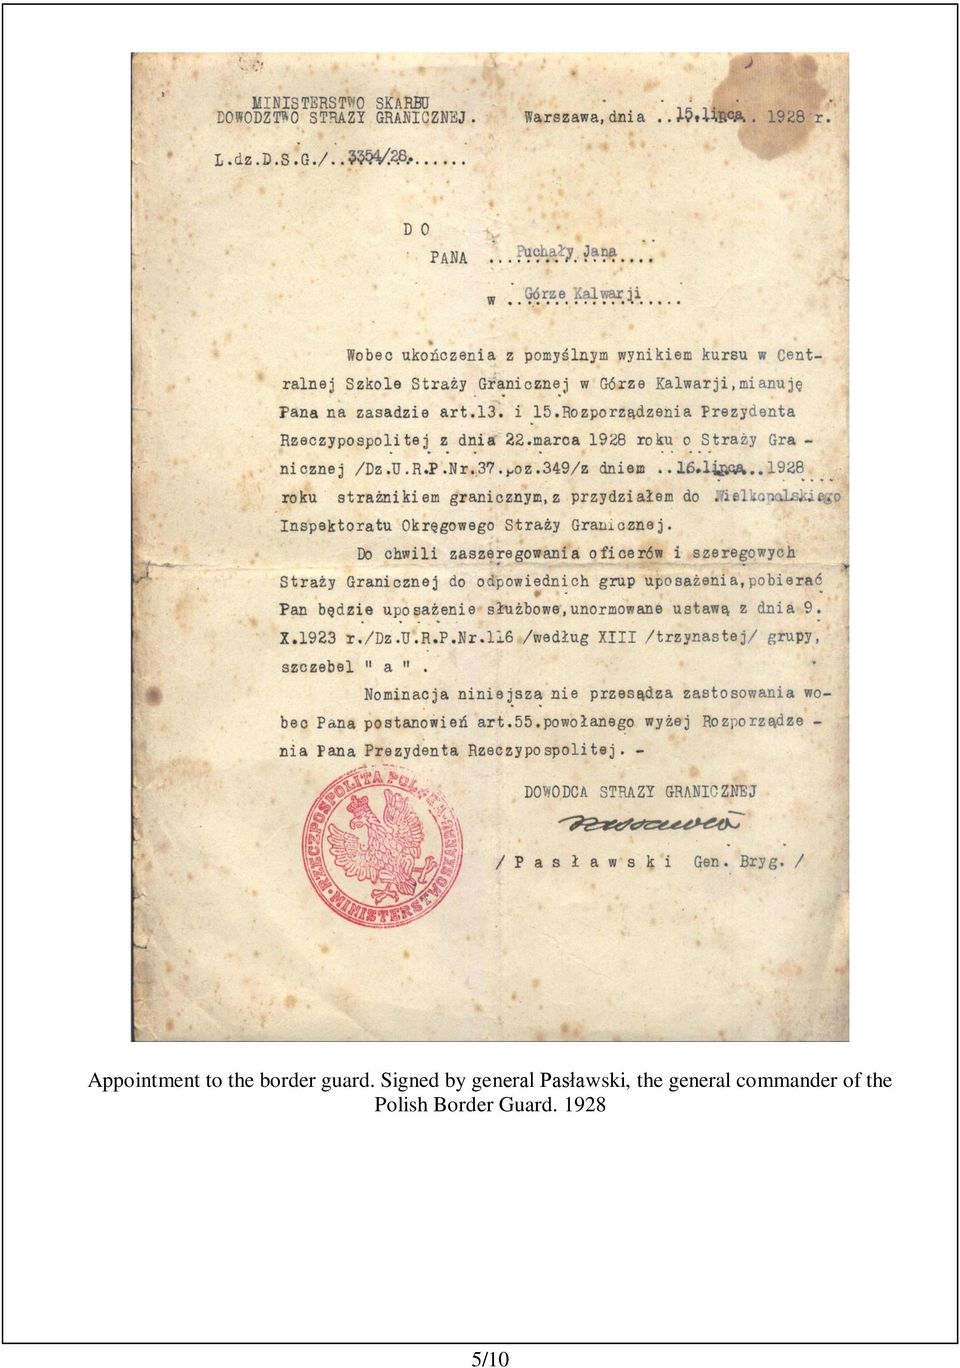 Signed by general Pasławski,